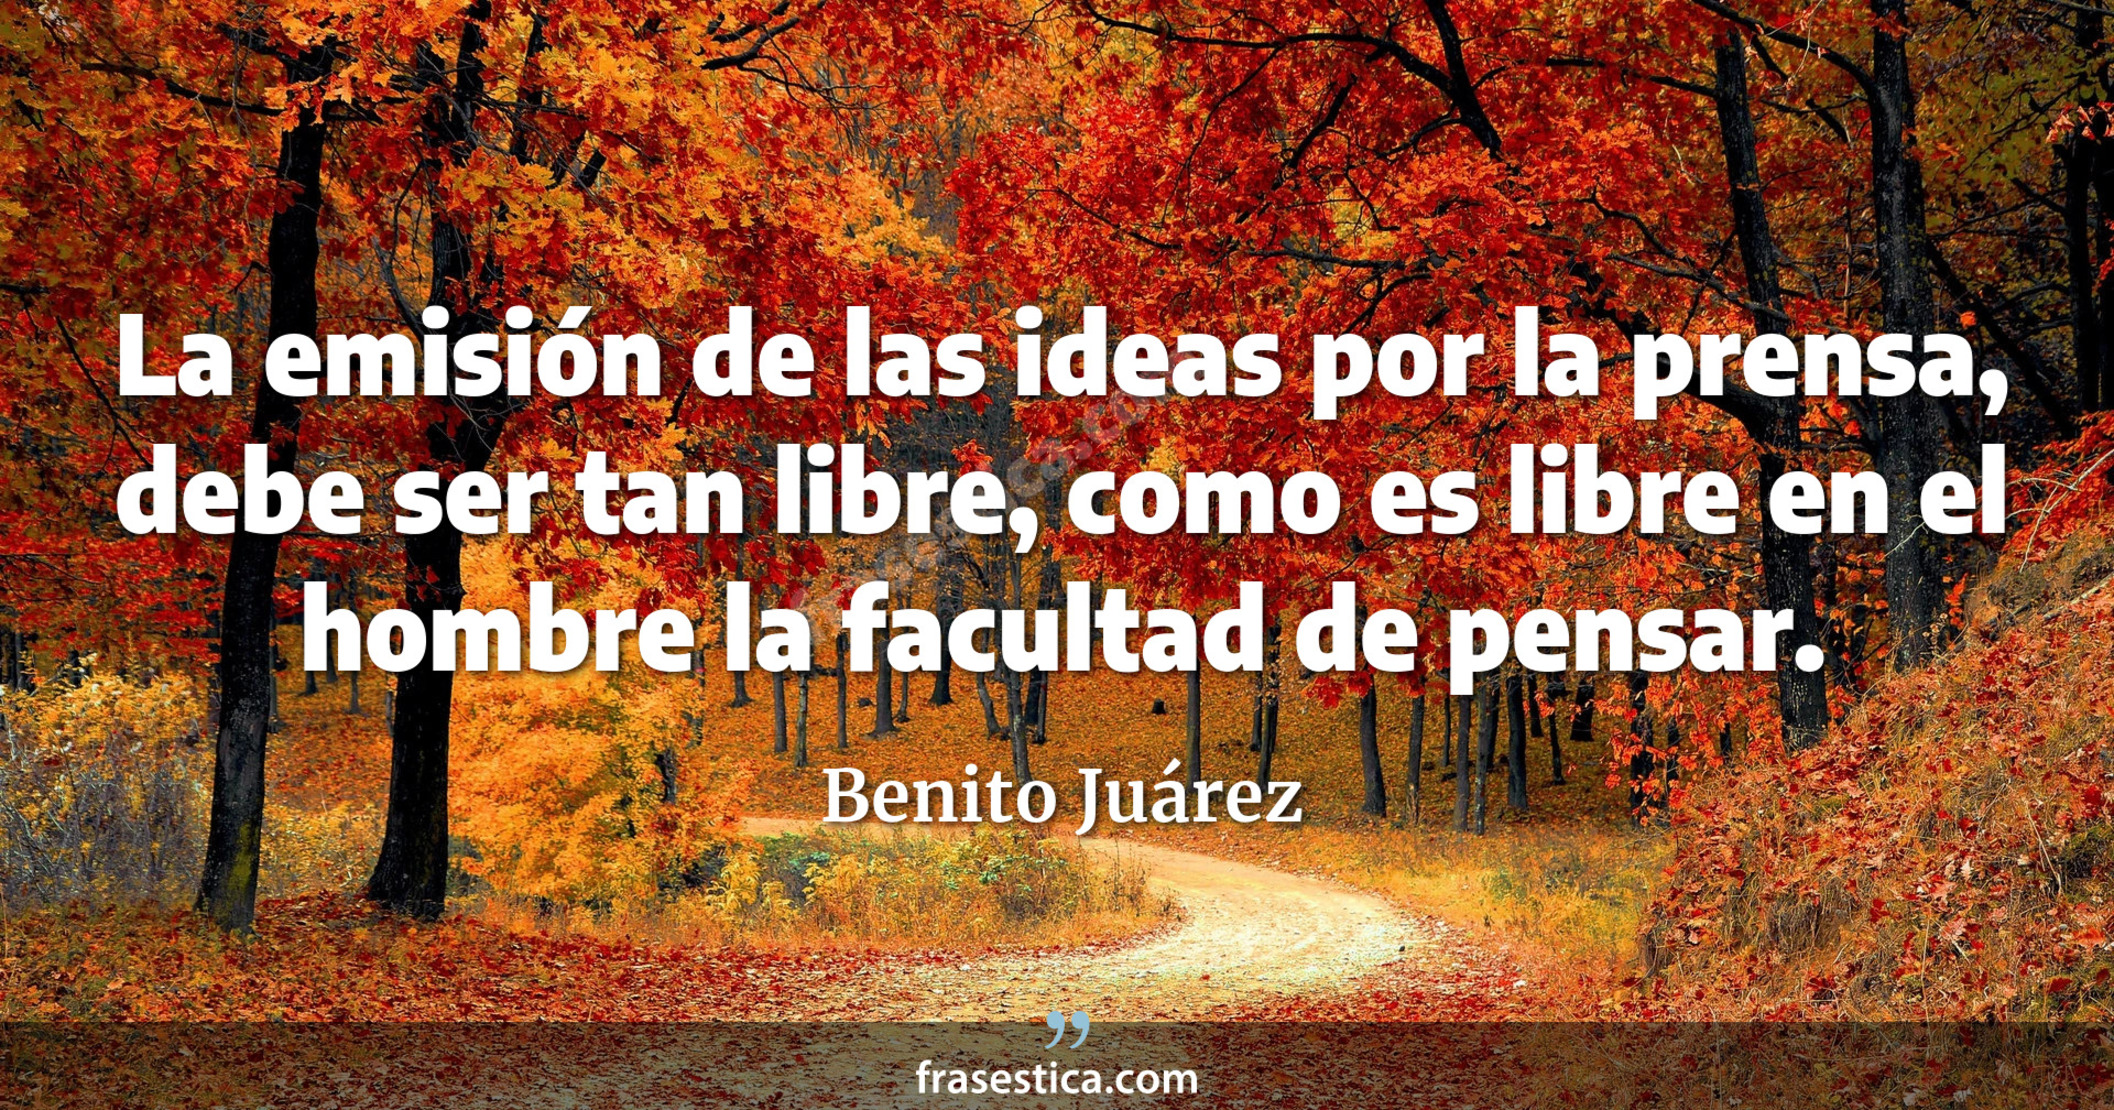 La emisión de las ideas por la prensa, debe ser tan libre, como es libre en el hombre la facultad de pensar. - Benito Juárez